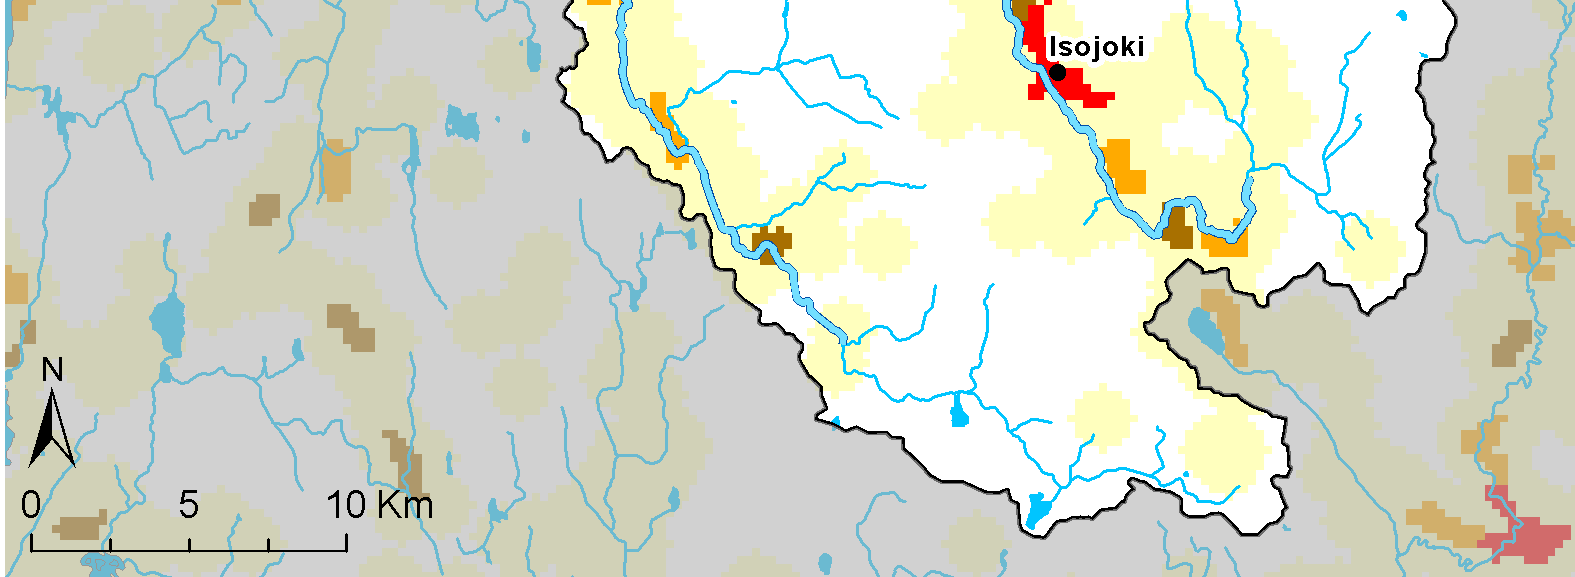 Vesipuitedirektiivin mukaisiin Natura 2000-alueisiin kuuluu Lapväärtin-Isojoen vesistöalueella koko Lapväärtin-Isojoen pääuoma ja Heikkilänjoen sivu-uoma sivuhaaroineen